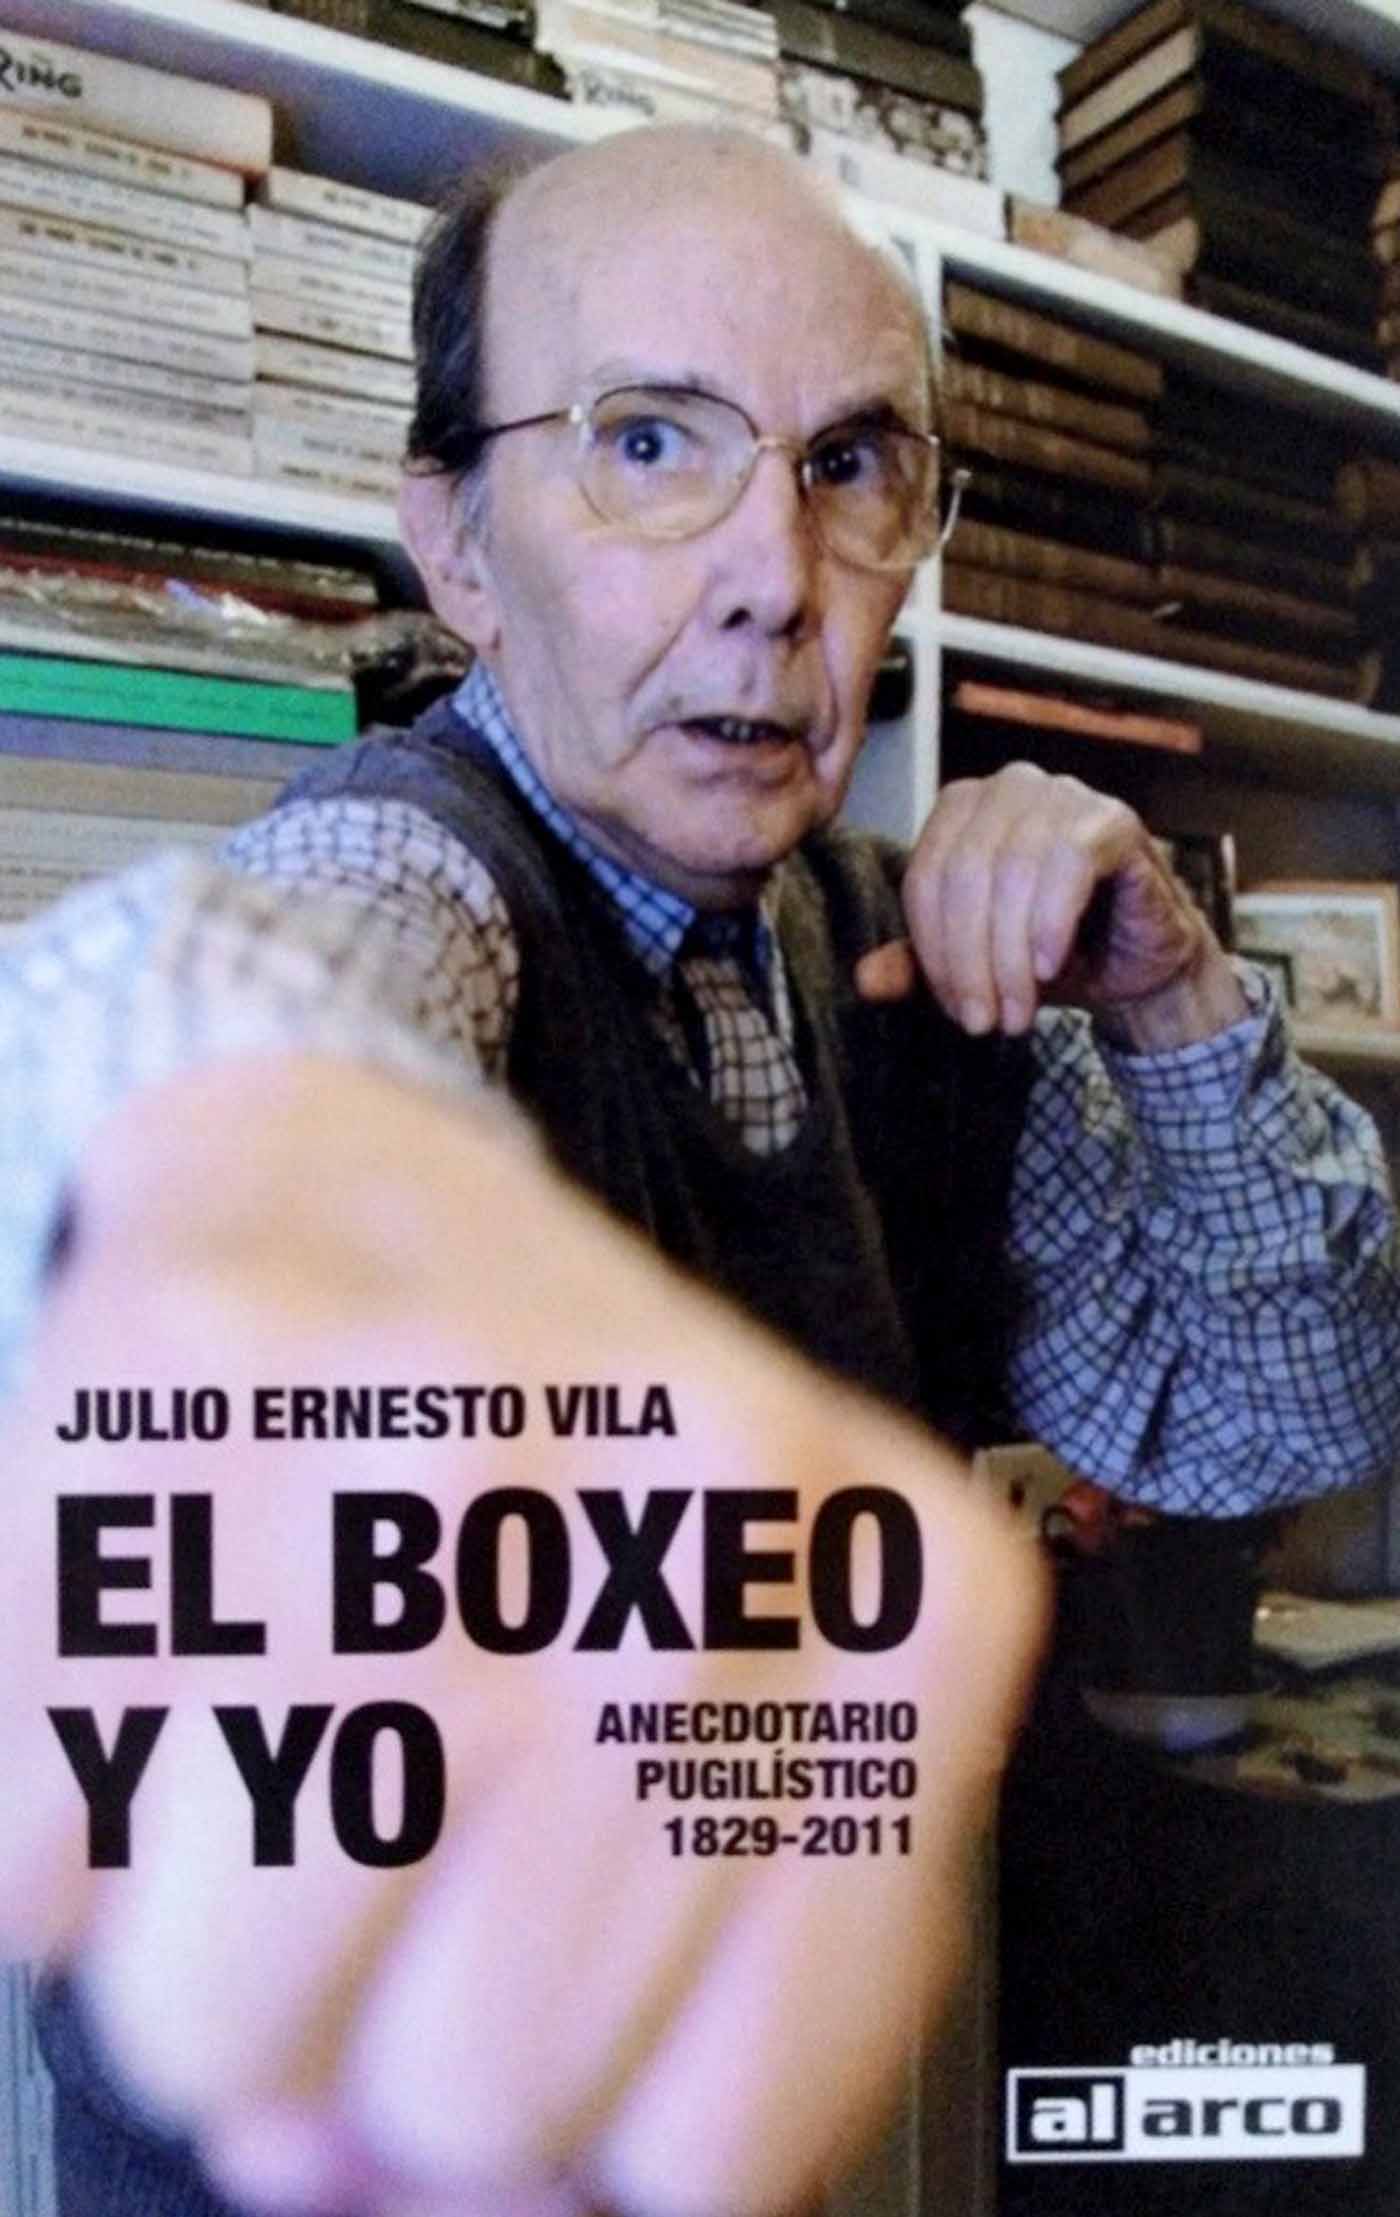 El boxeo y yo Julio Ernesto Vila